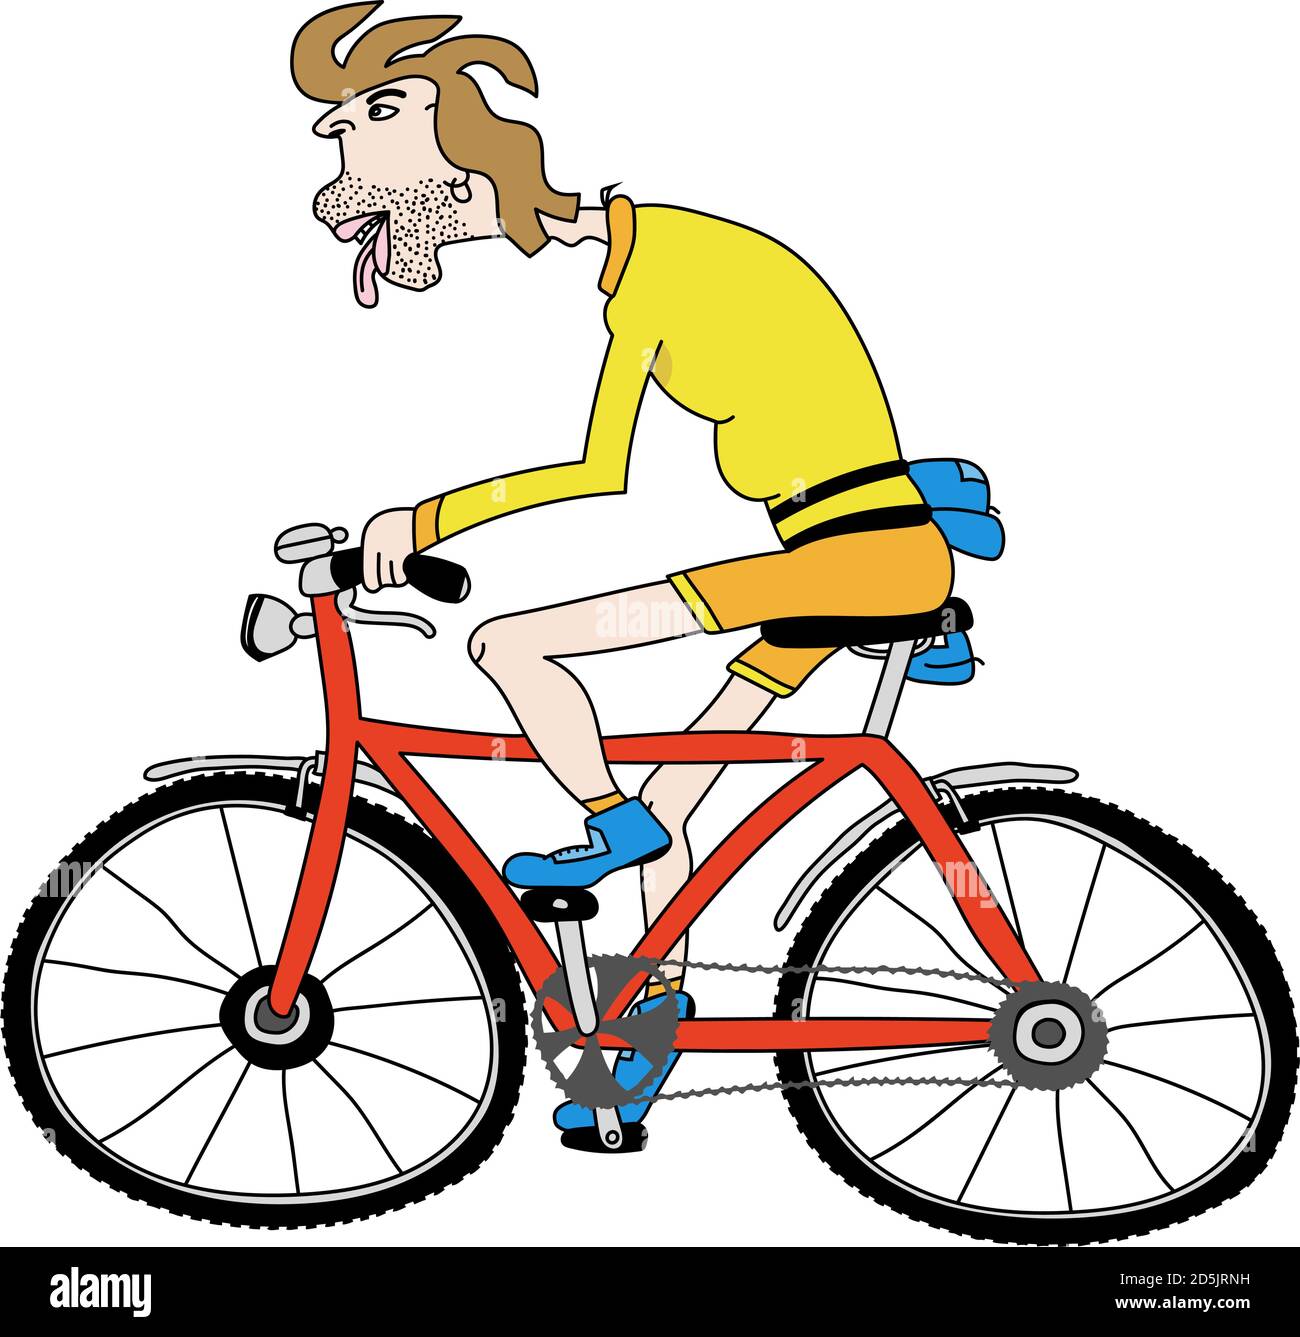 Cartoni animati vettoriali modificabili illustrazione di un uomo che guida una bicicletta Illustrazione Vettoriale